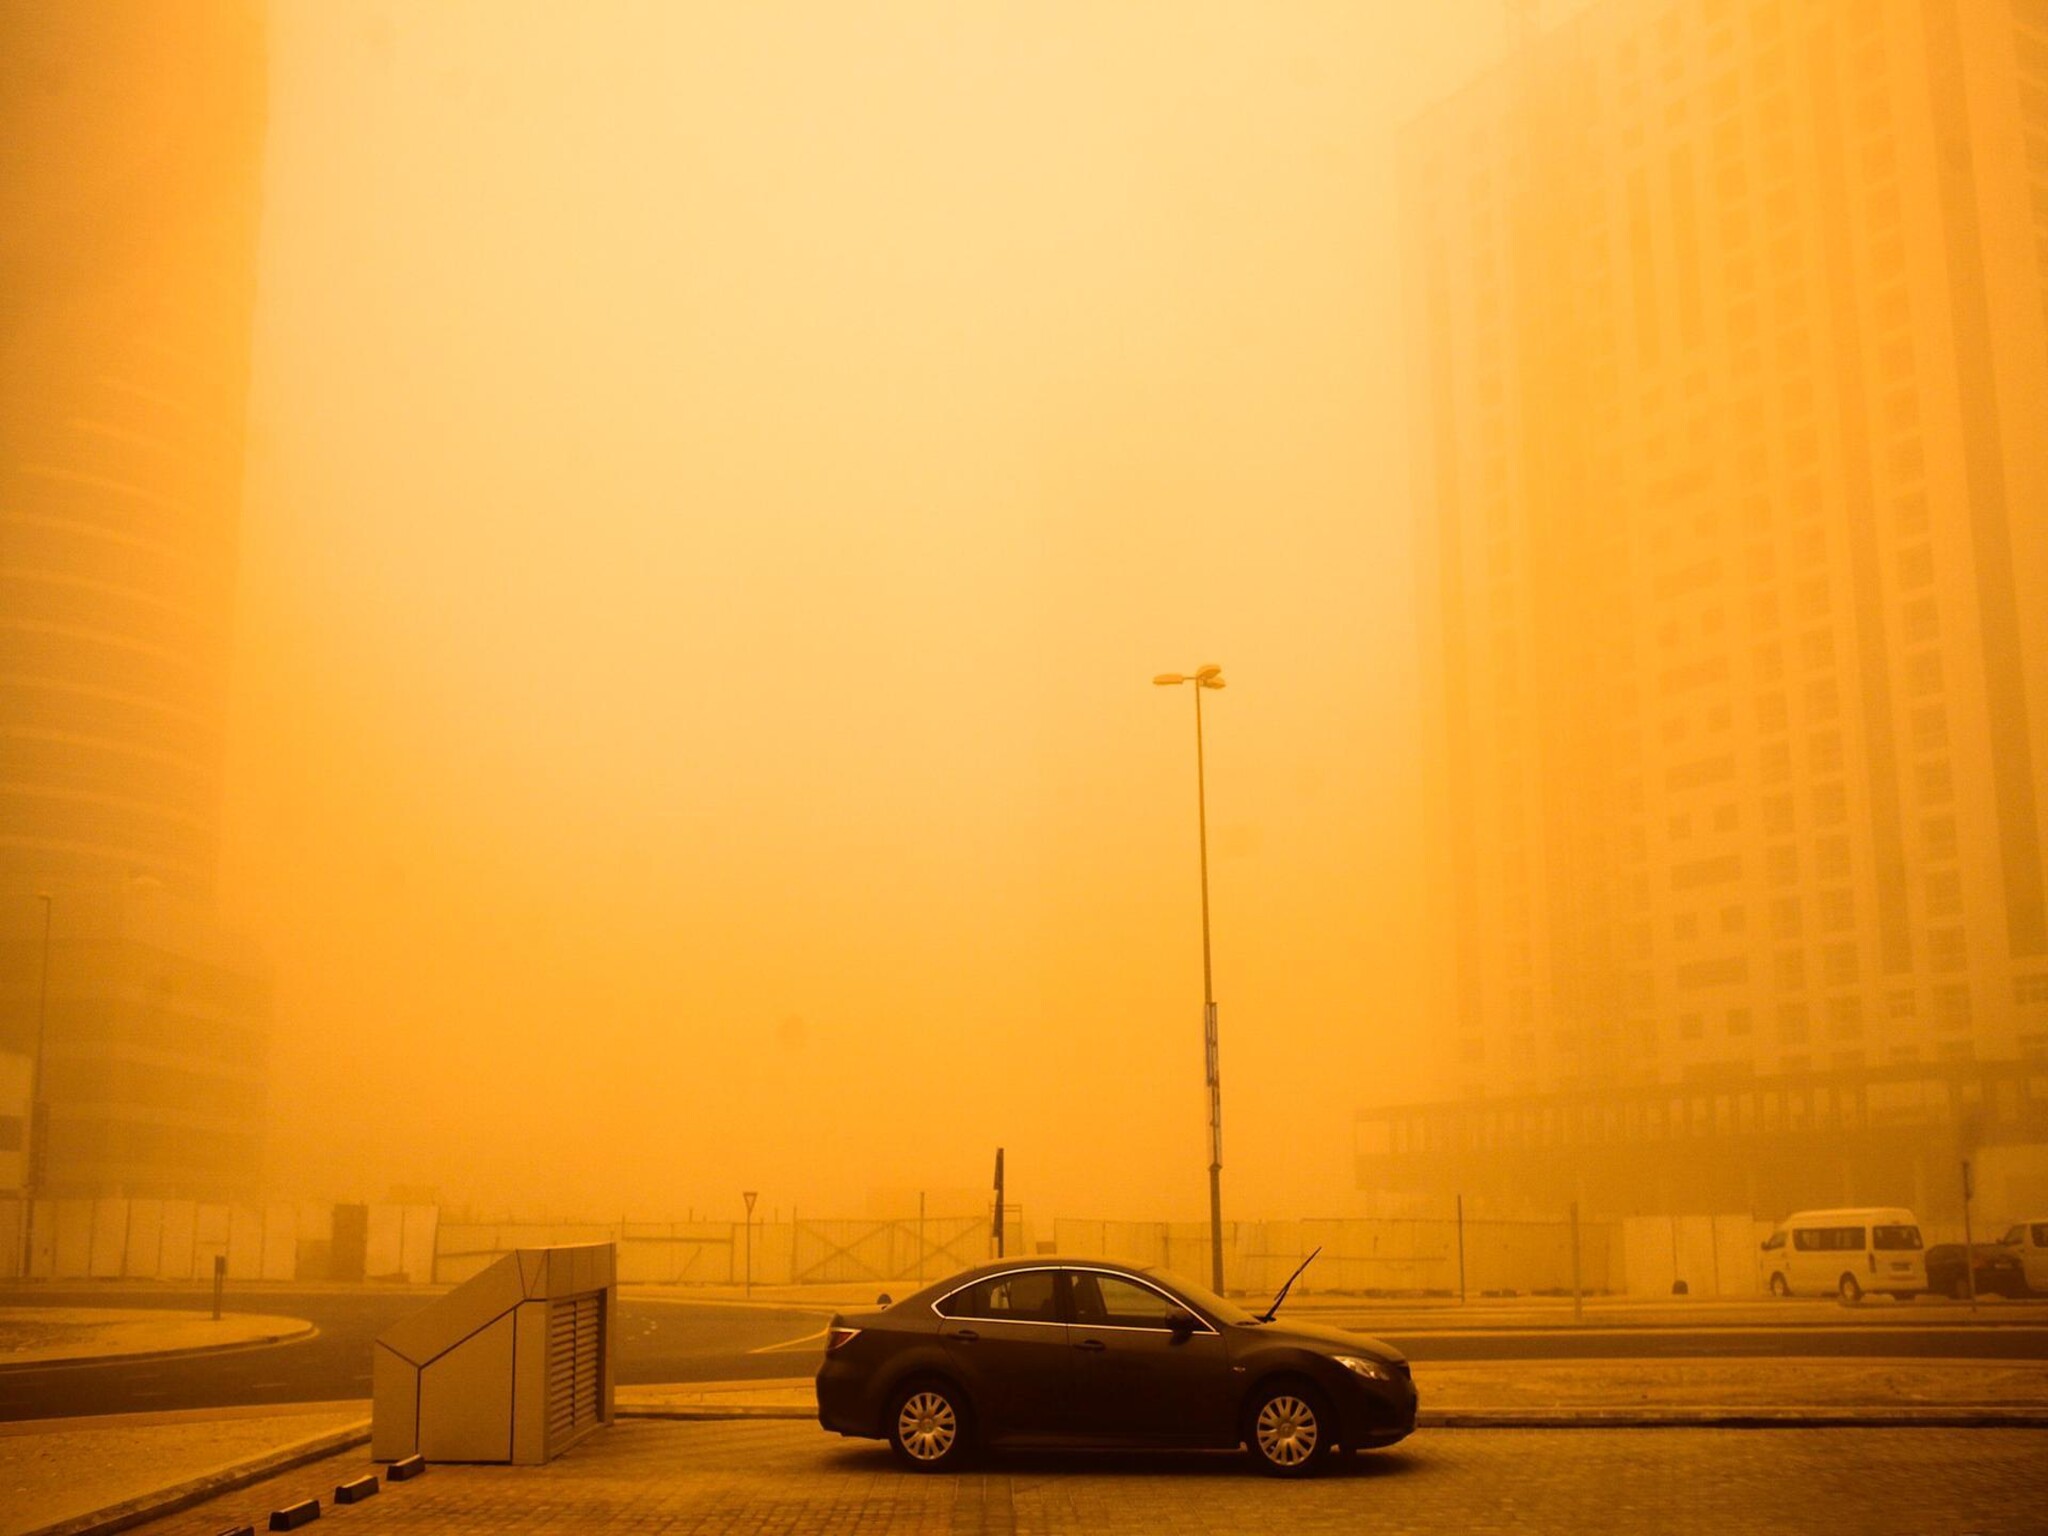 عاصفة ترابية في الإمارات واغلاق بعض الطرق بشكل جزئي